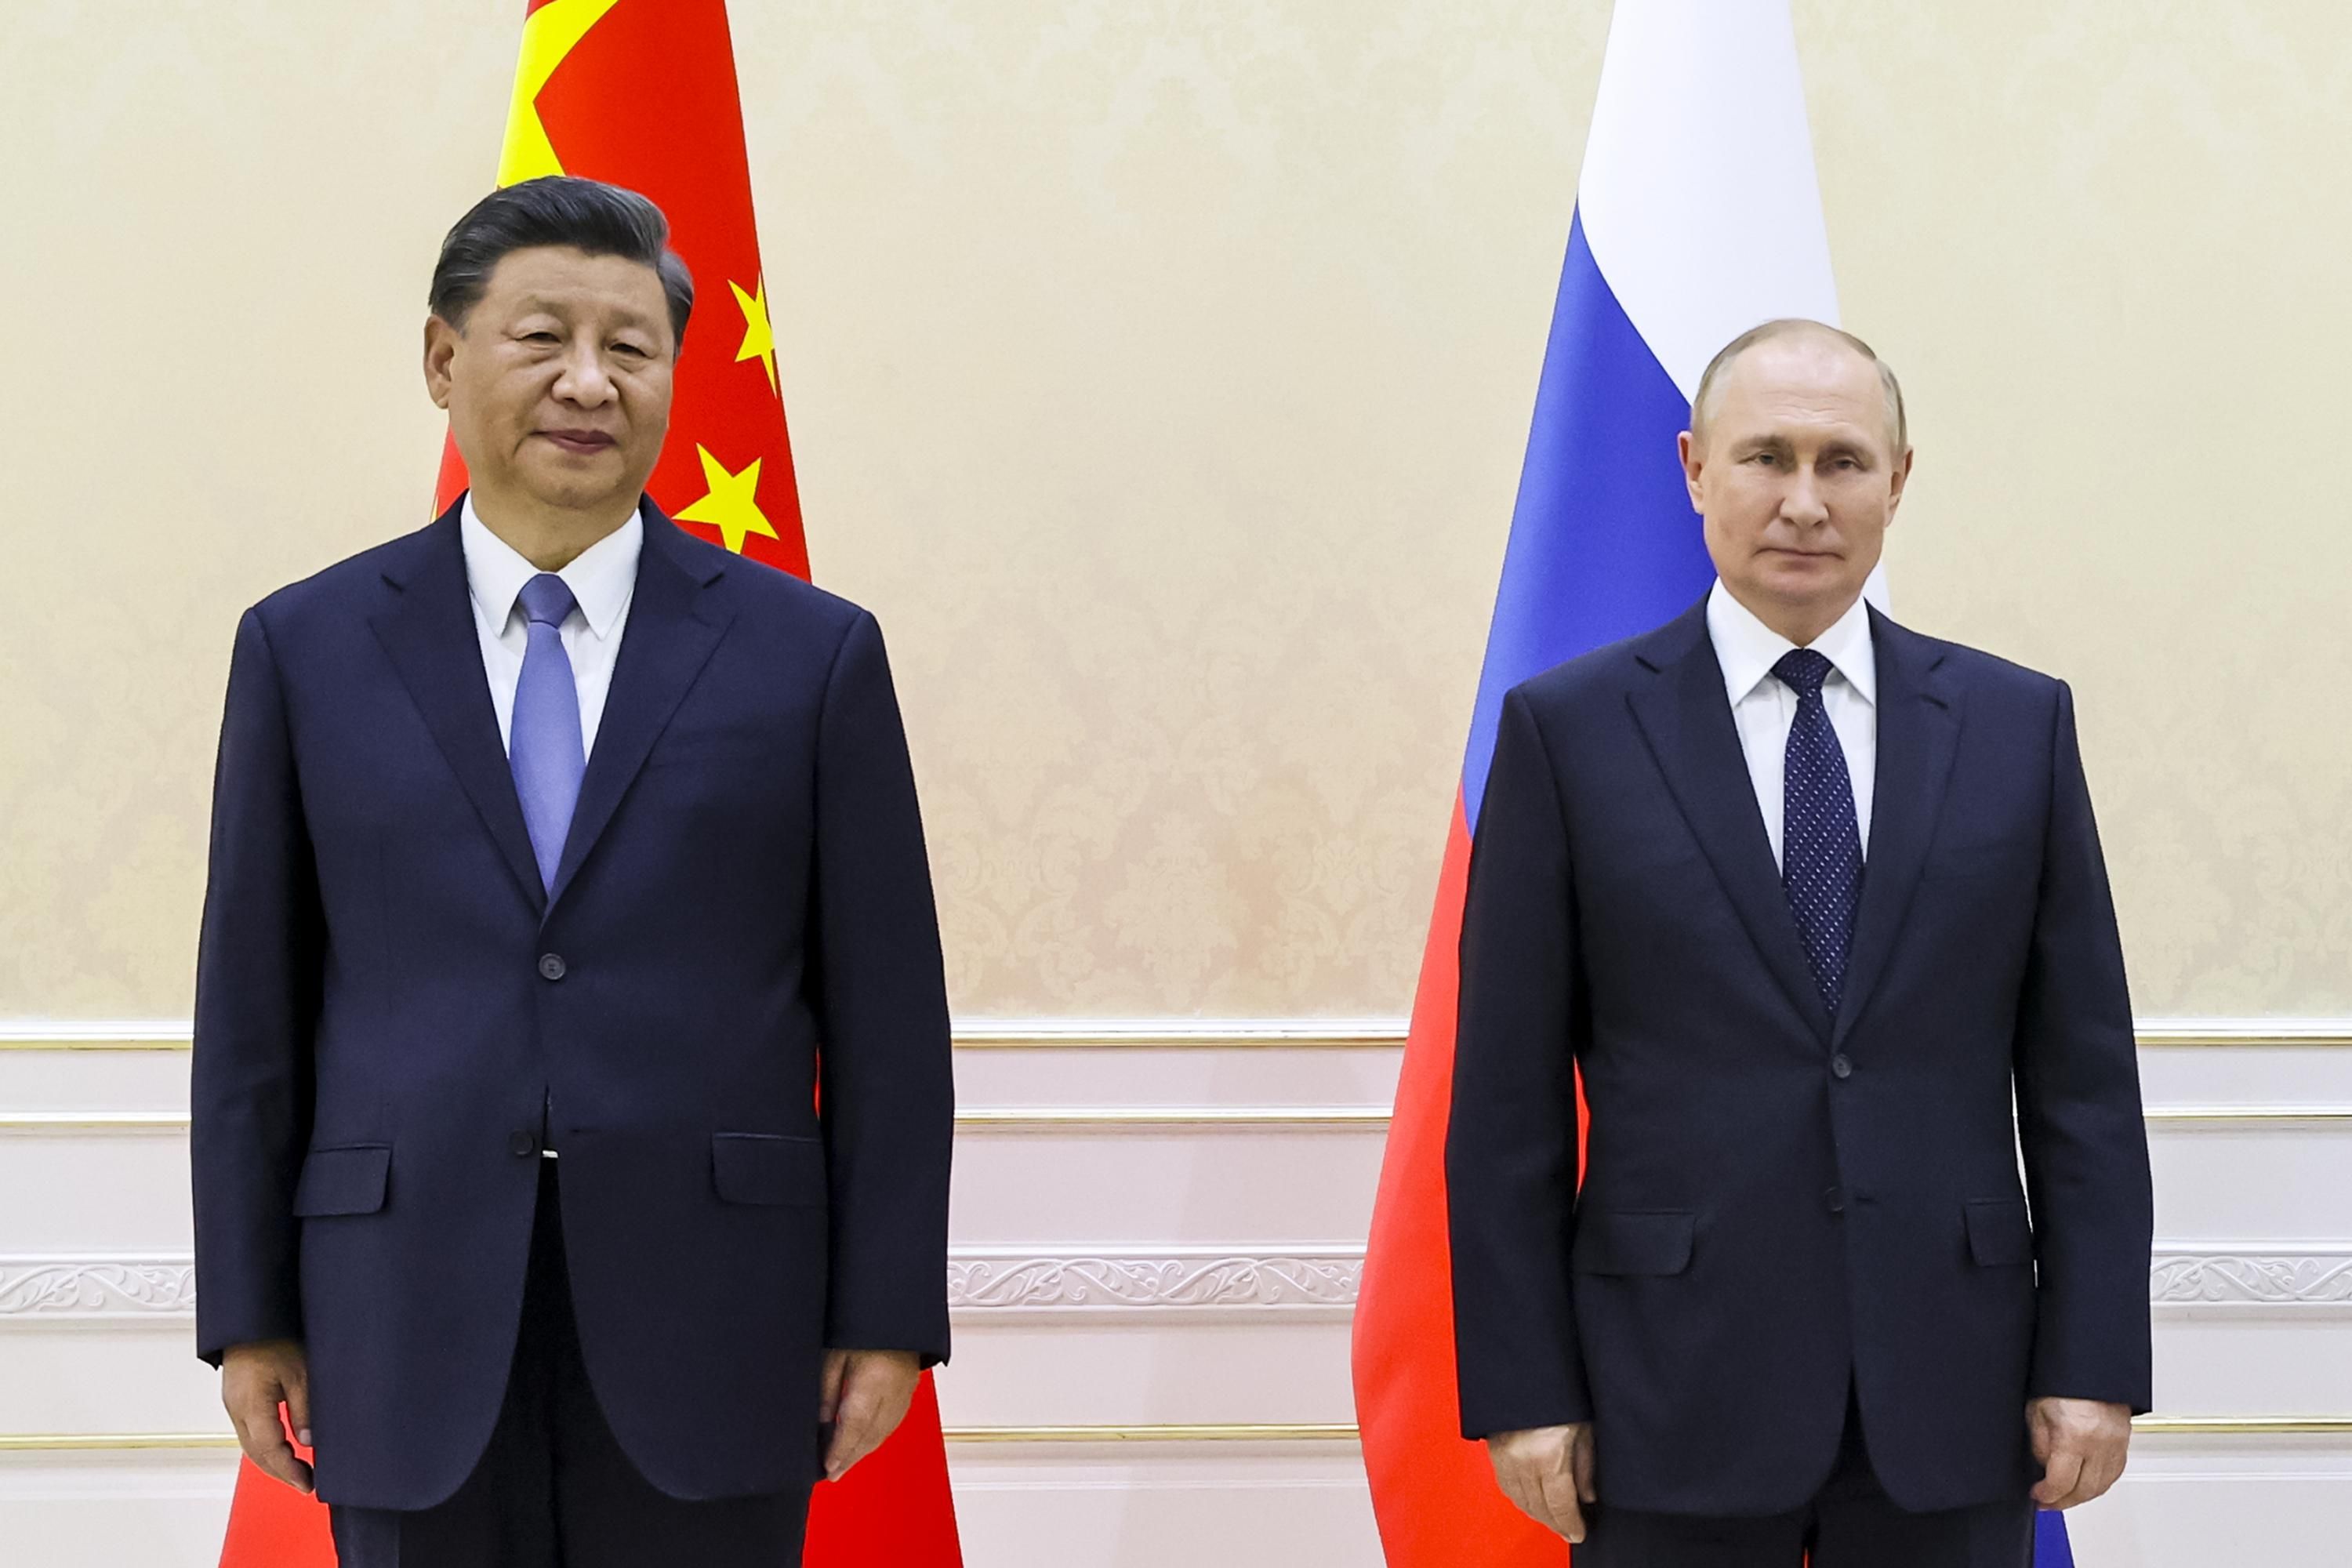 Чего хочет Си Цзиньпин от Путина: Economist о скрытых намерениях главы Китая - 24 Канал